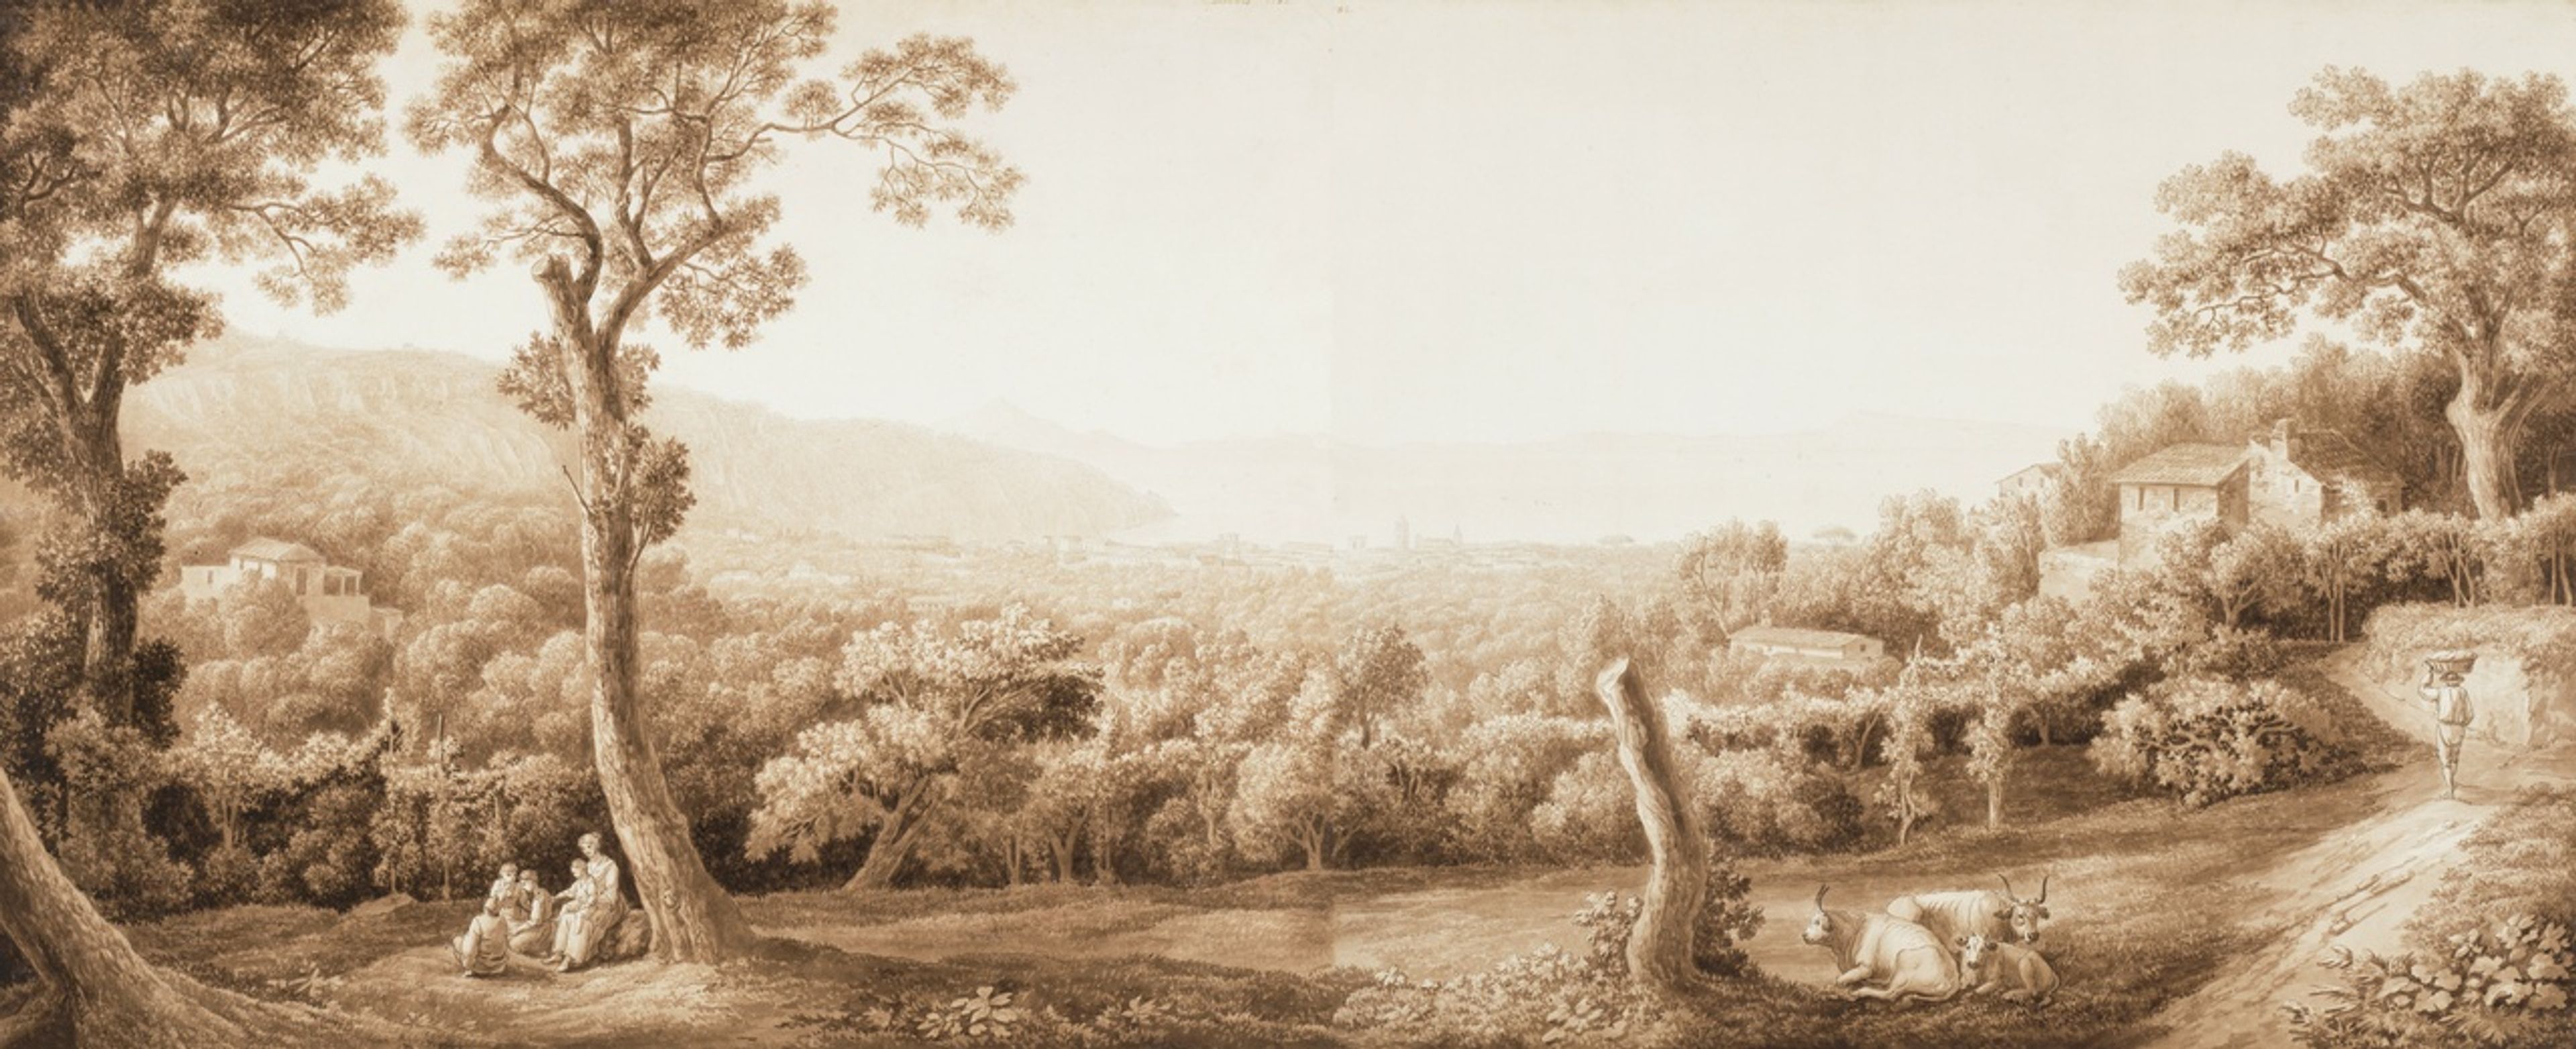 Jacob Philipp Hackert (1737-1807), Gezicht op Sorrento, 1782.